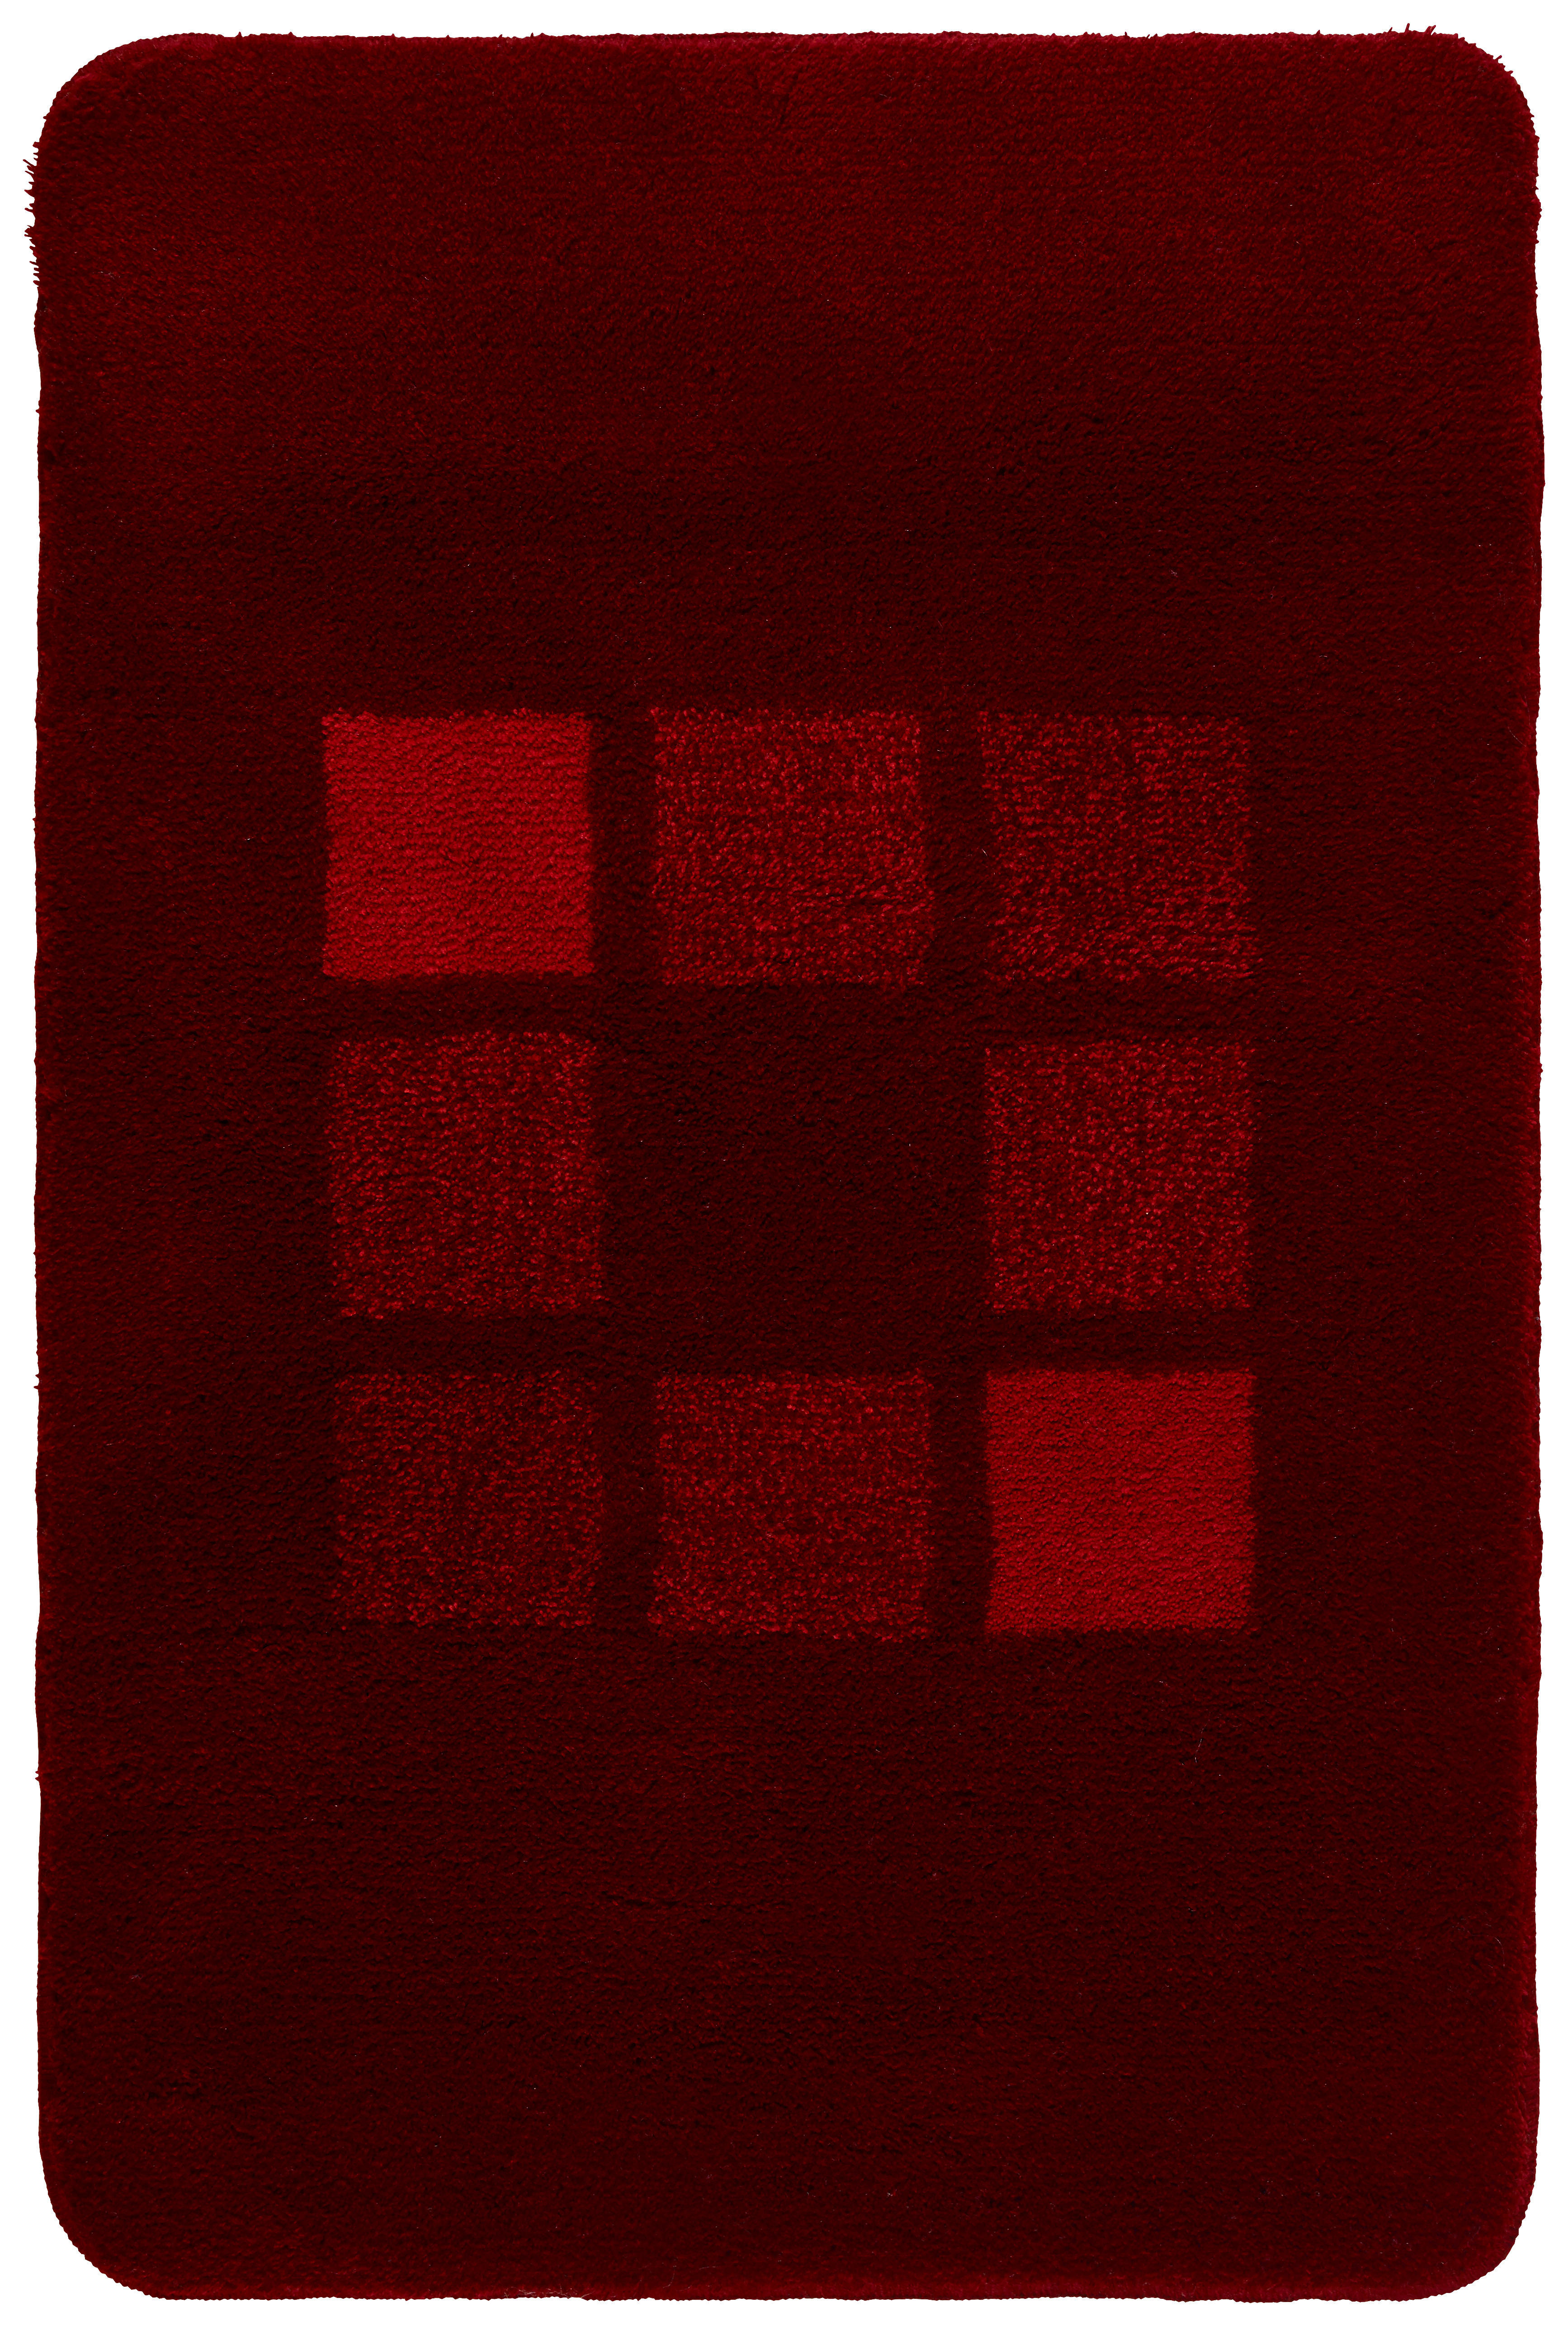 KOBERČEK DO KÚPEĽNE, 70/120 cm - červená, Konventionell, textil/plast (70/120cm) - Kleine Wolke